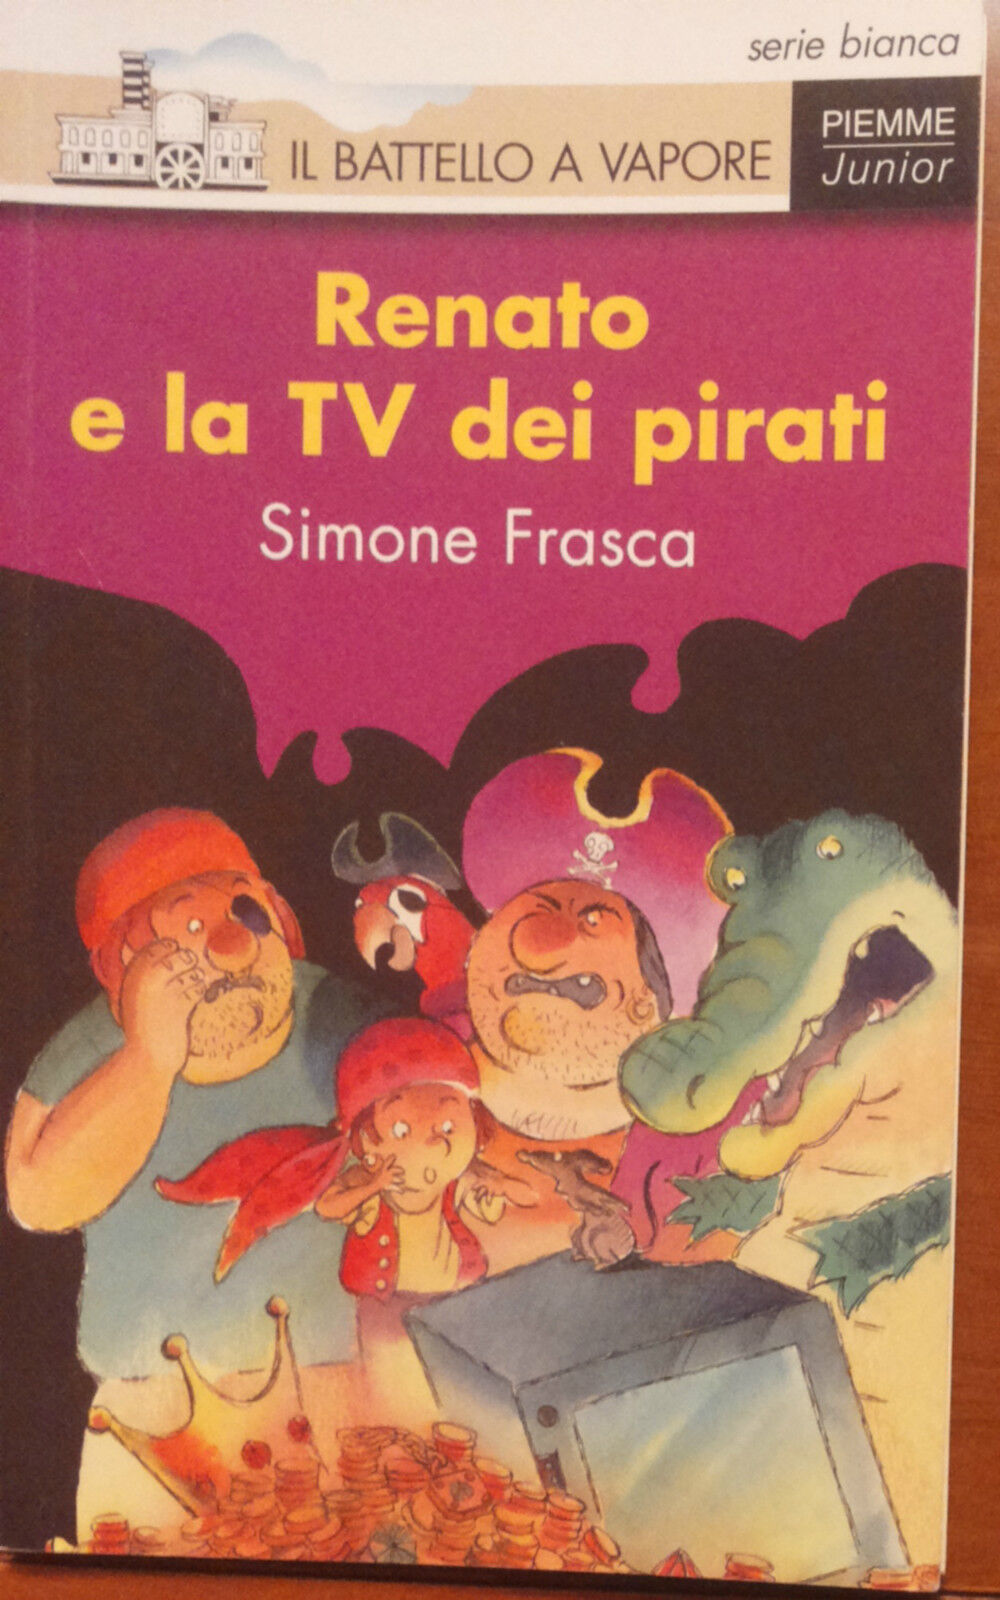 Renato e la Tv dei pirati - Simone Frasca - Piemme,1997 - A libro usato